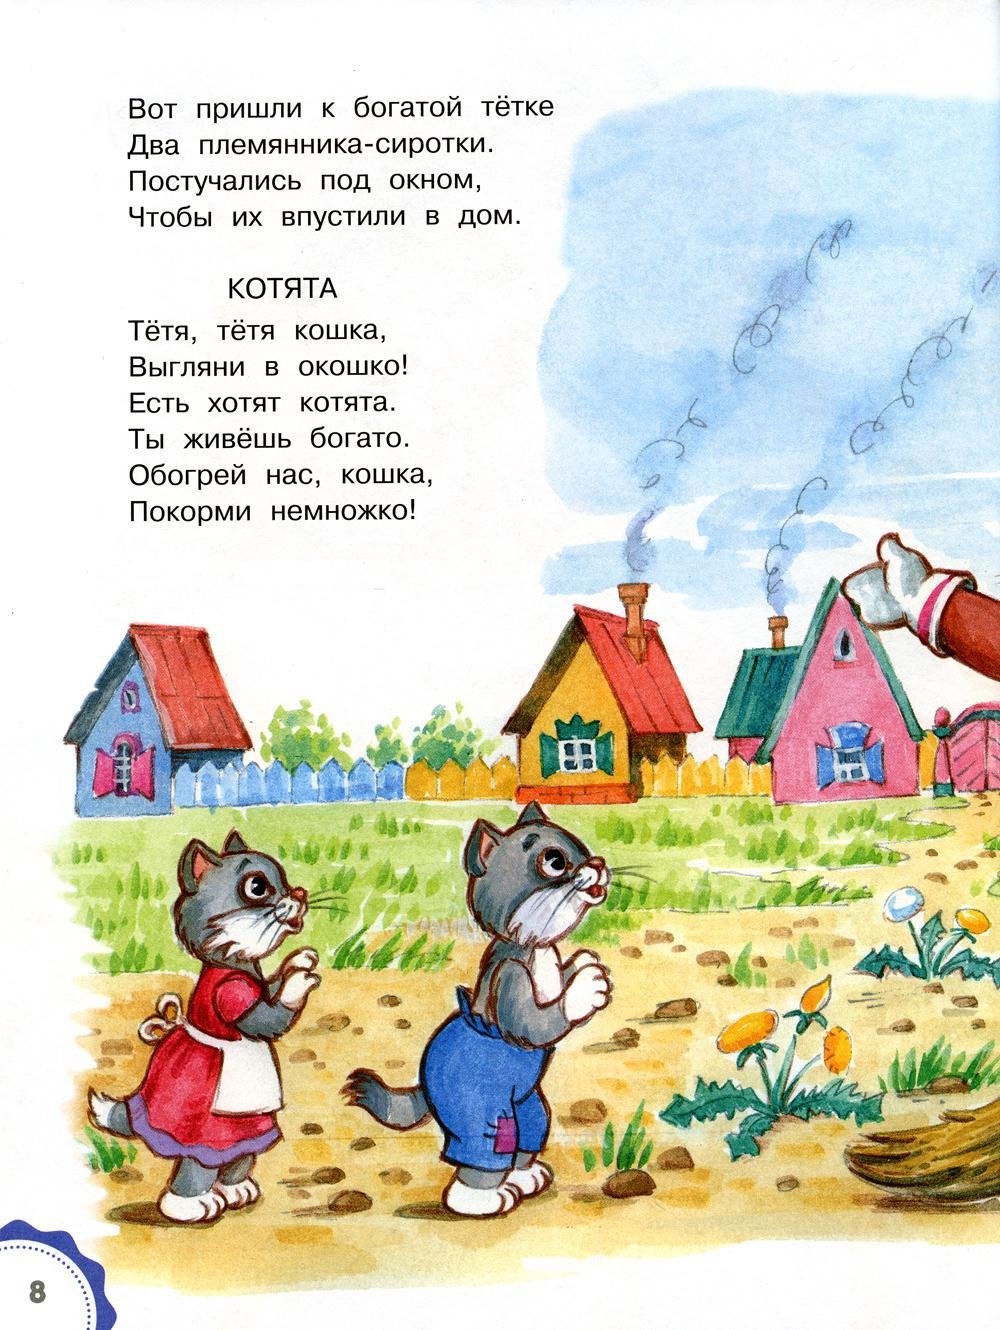 Иллюстрации к сказке Кошкин дом Маршака